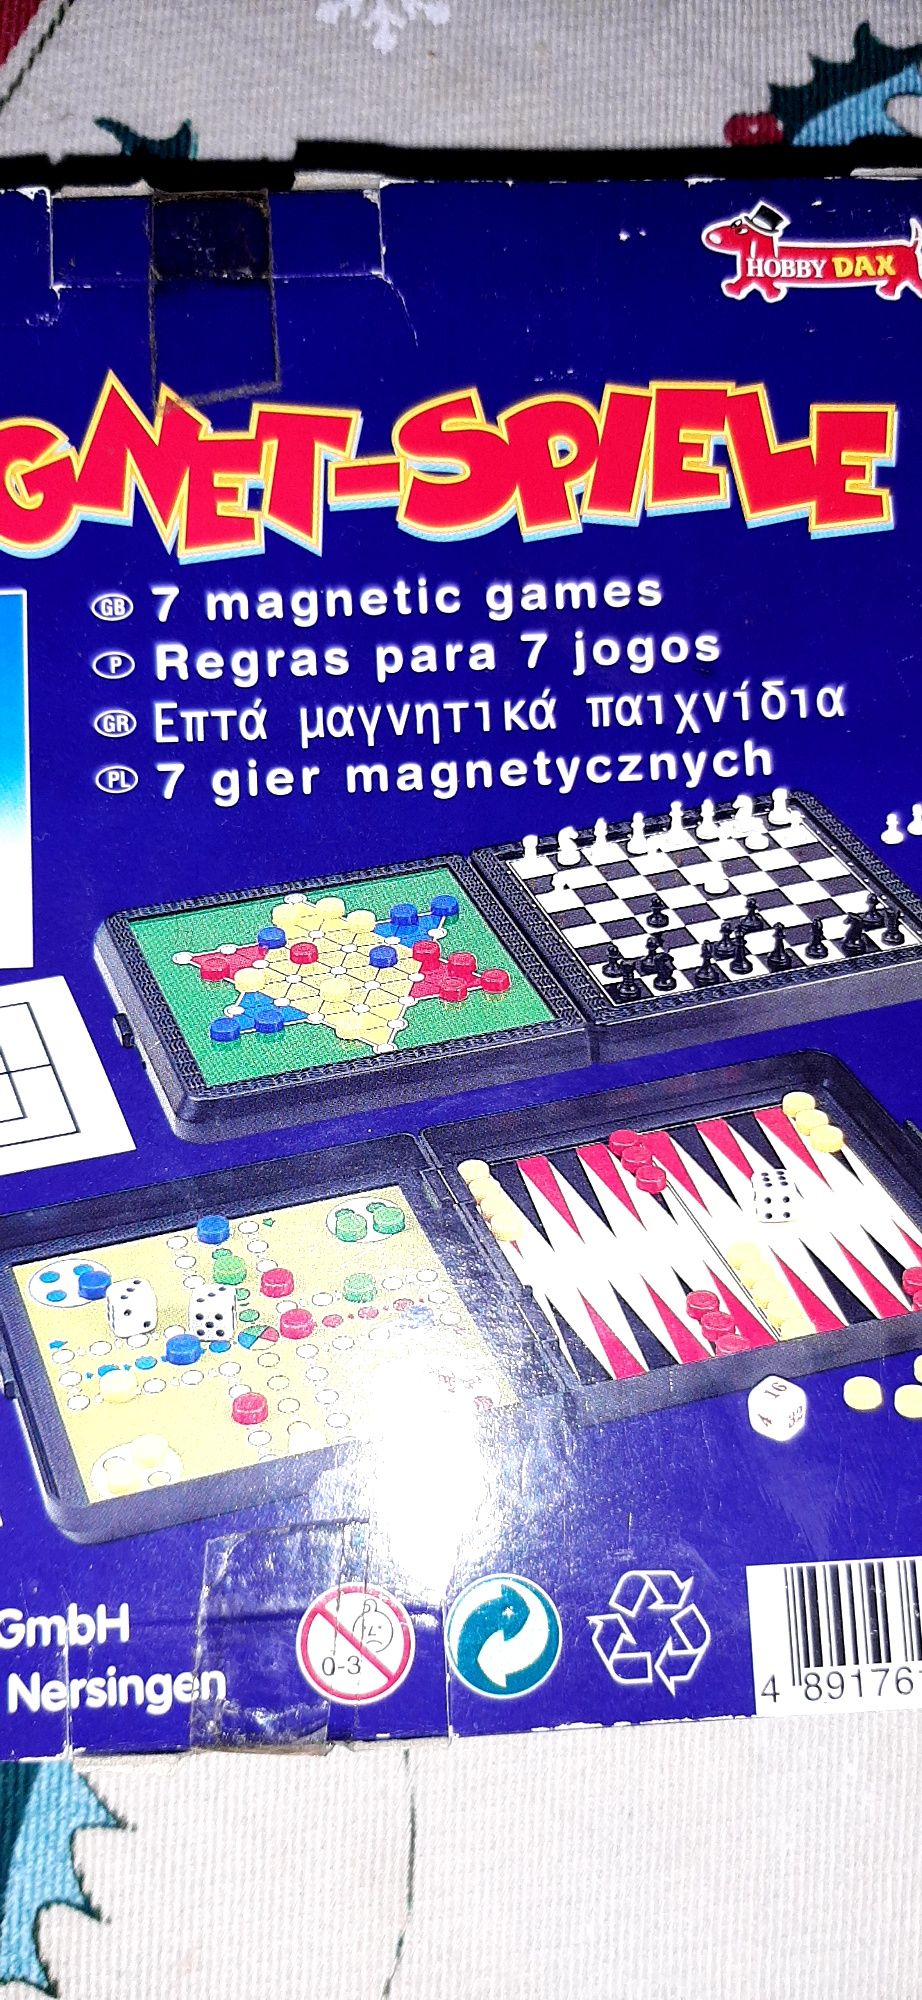 7 jogos magnéticos tradicionais, xadrez, Gamão, Loto, damas etc...